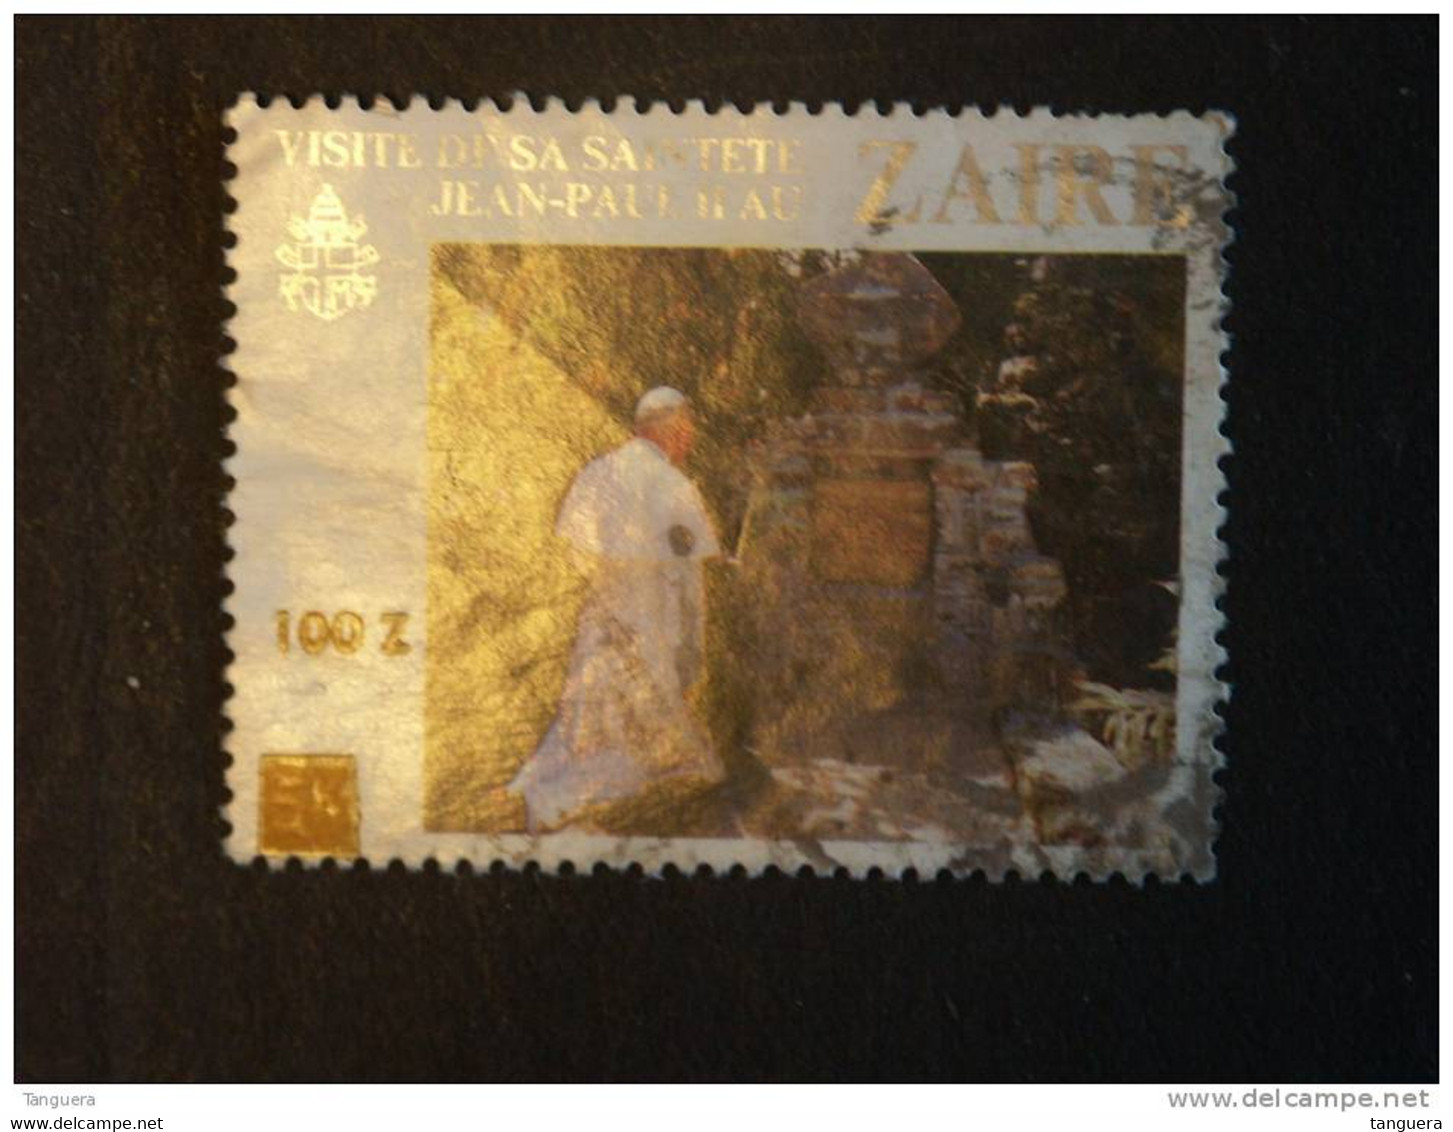 Congo Zaire 1990 Timbres Surchargés Pape Jean-Paul II Yv 1282 COB 1362 O - Oblitérés